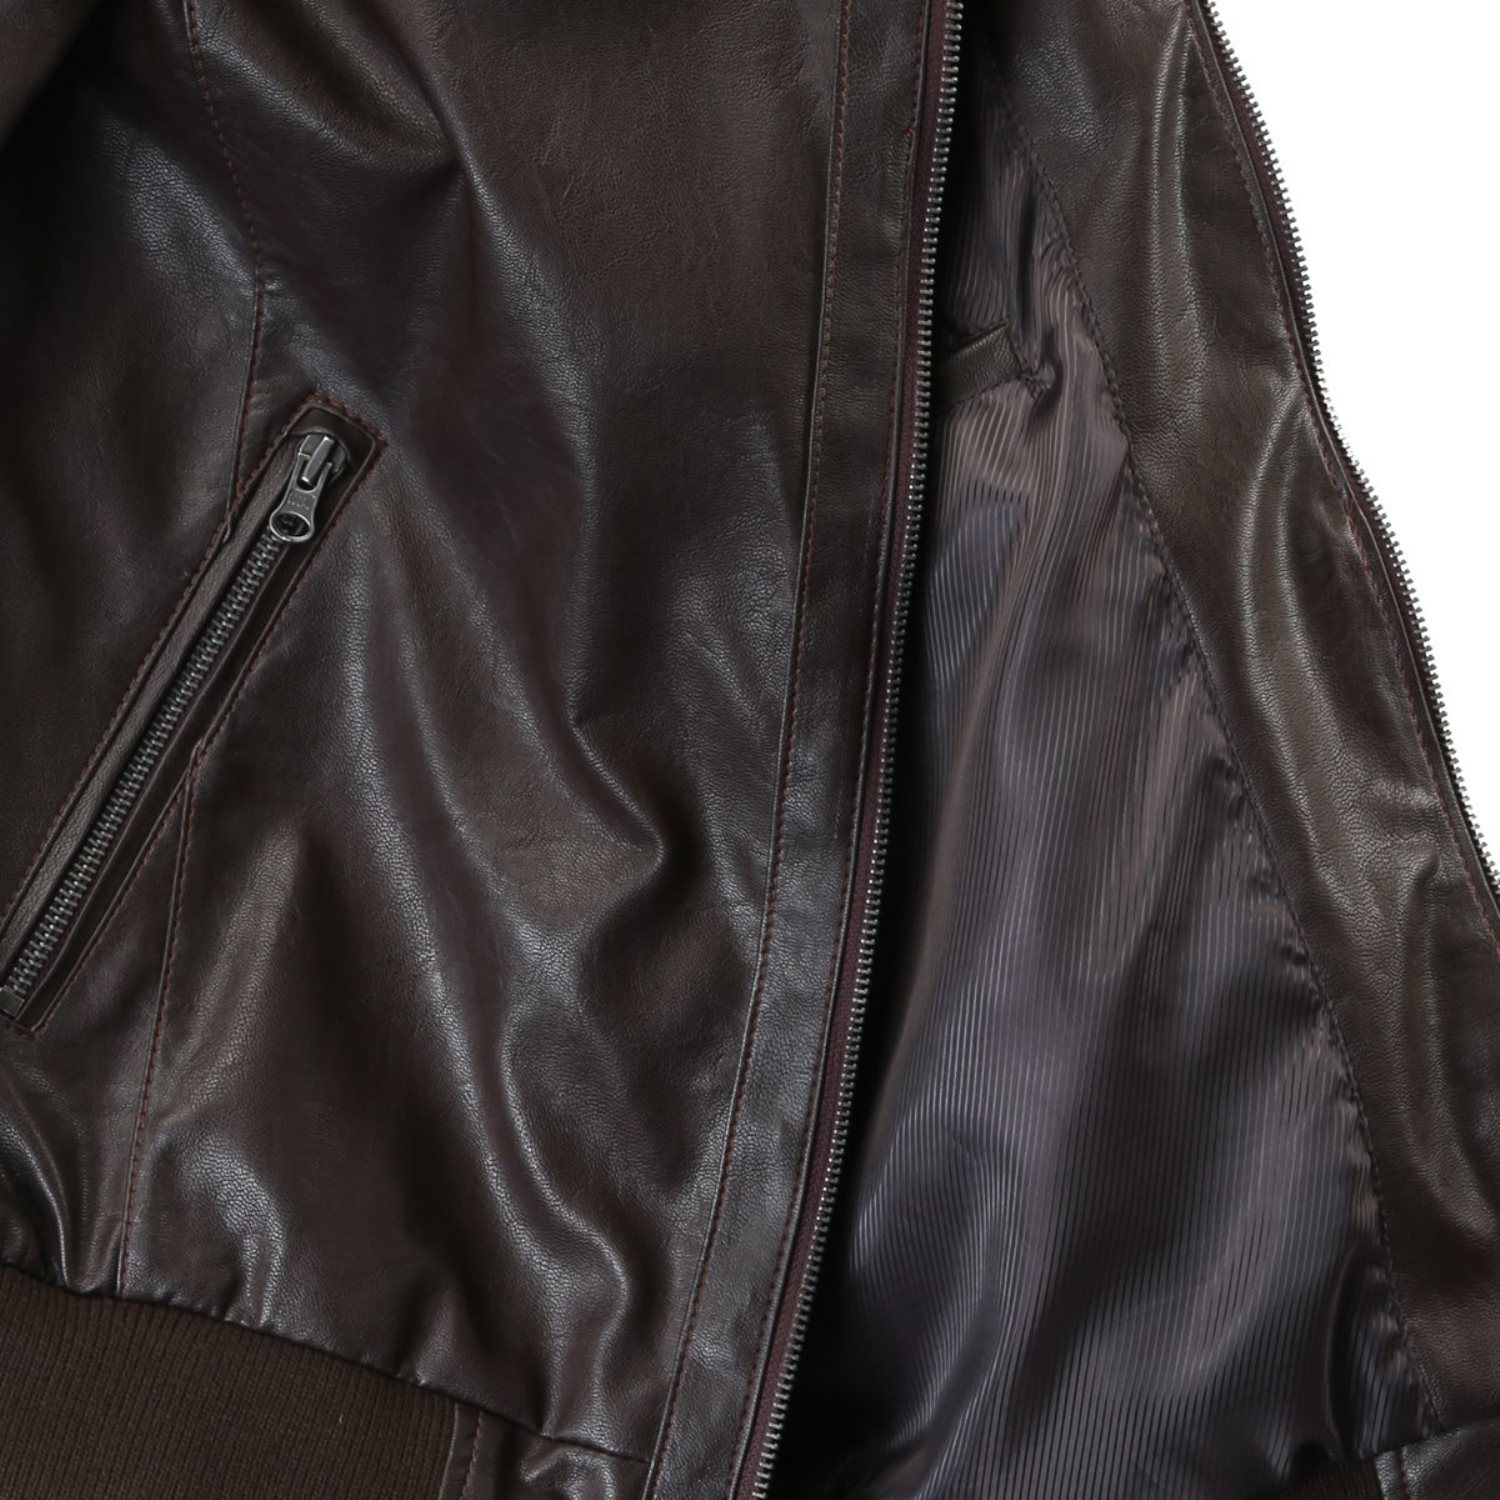 Bareskin Brown Casual Jacket - Buy Bareskin Brown Casual Jacket Online ...